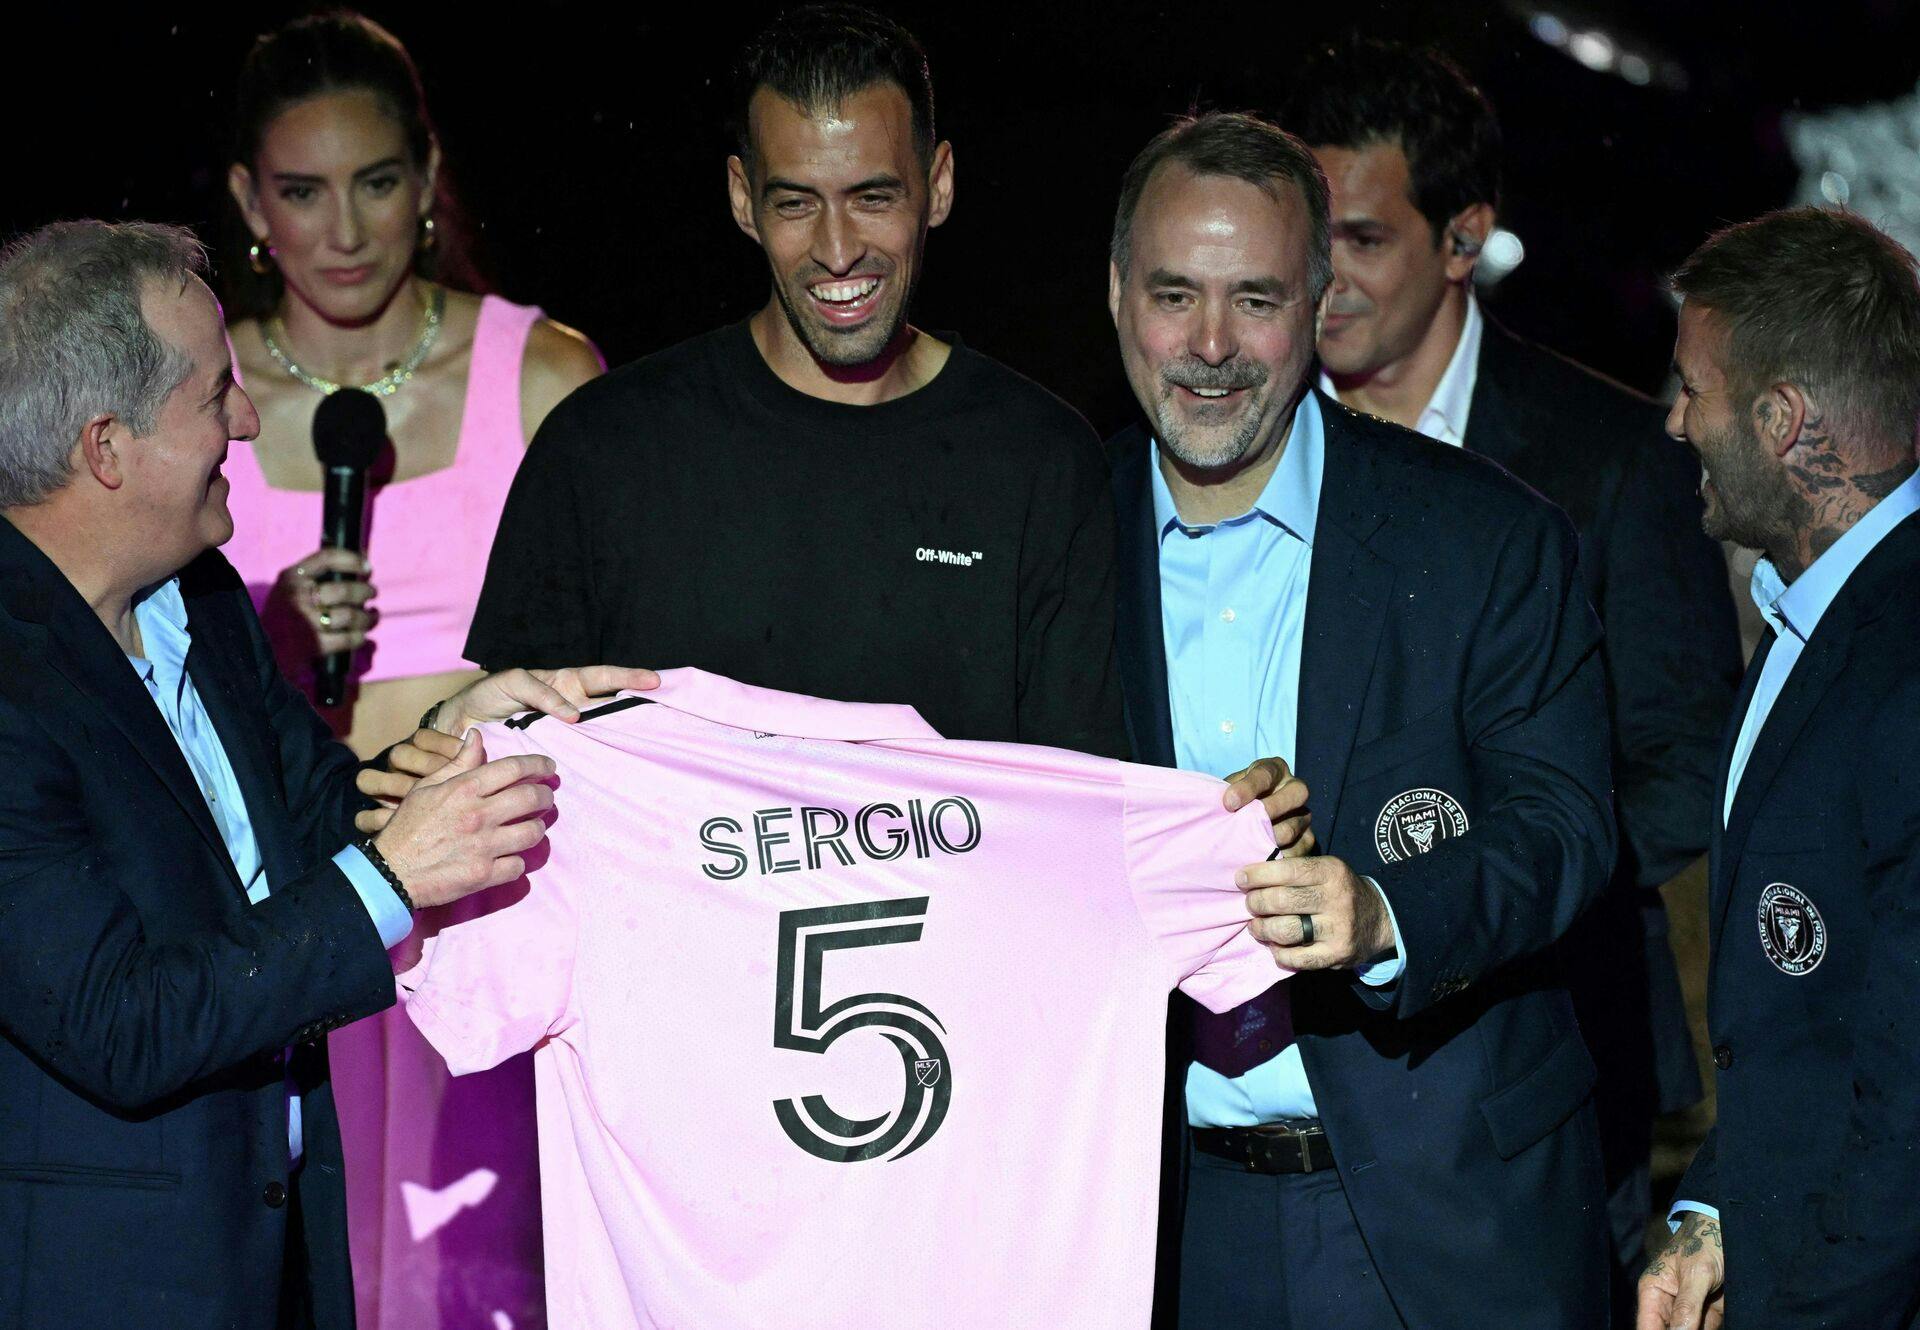 Det er Sergio Busquets og ikke Álvaro Arbeloa, der er skiftet til MLS. 